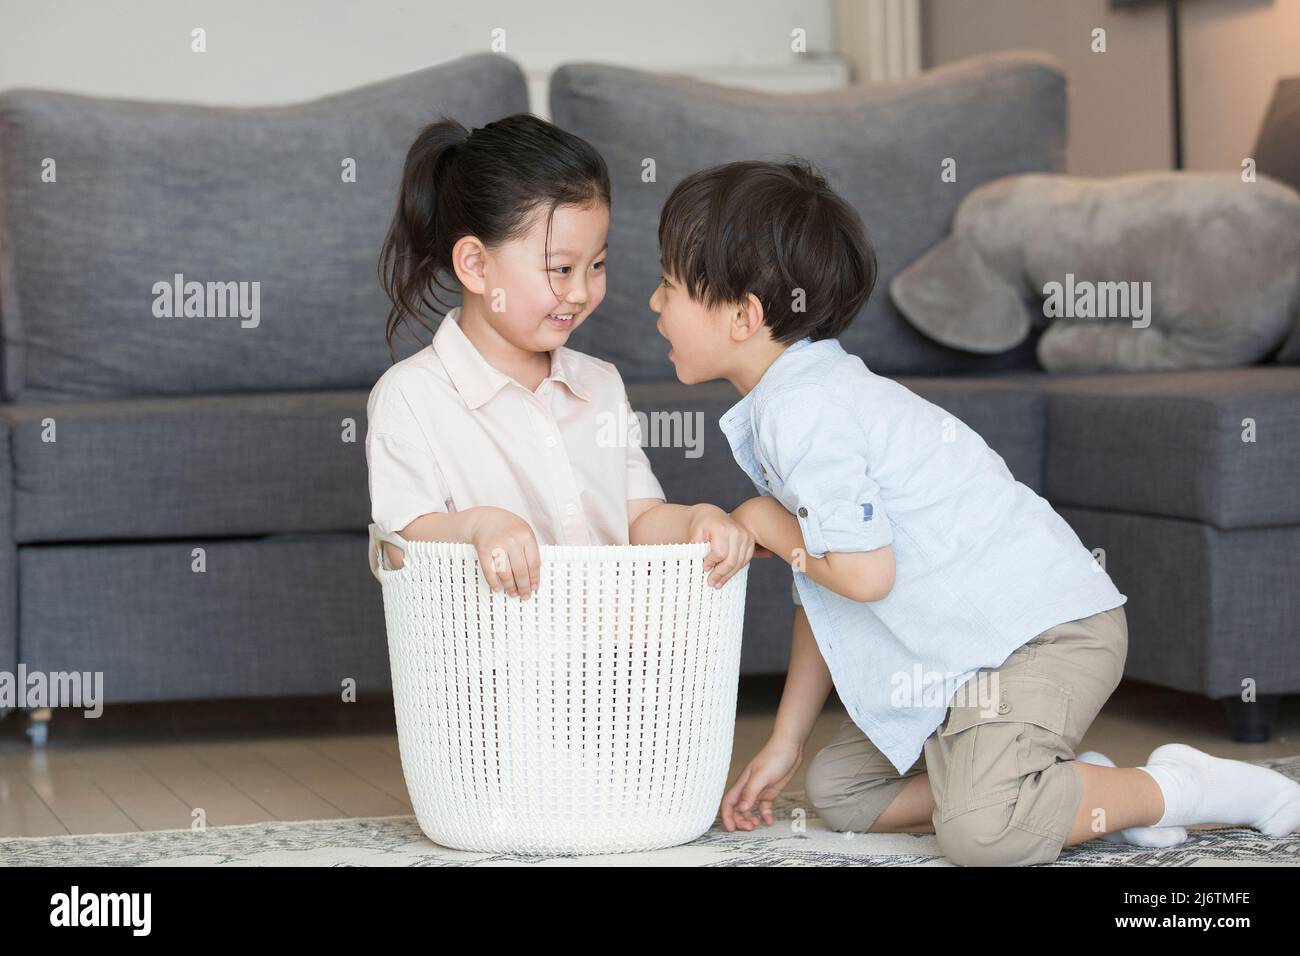 Dal divano del soggiorno, una bambina è pronta a sedersi nel cesto di vestiti e il ragazzino scherza con lei - foto di scorta Foto Stock